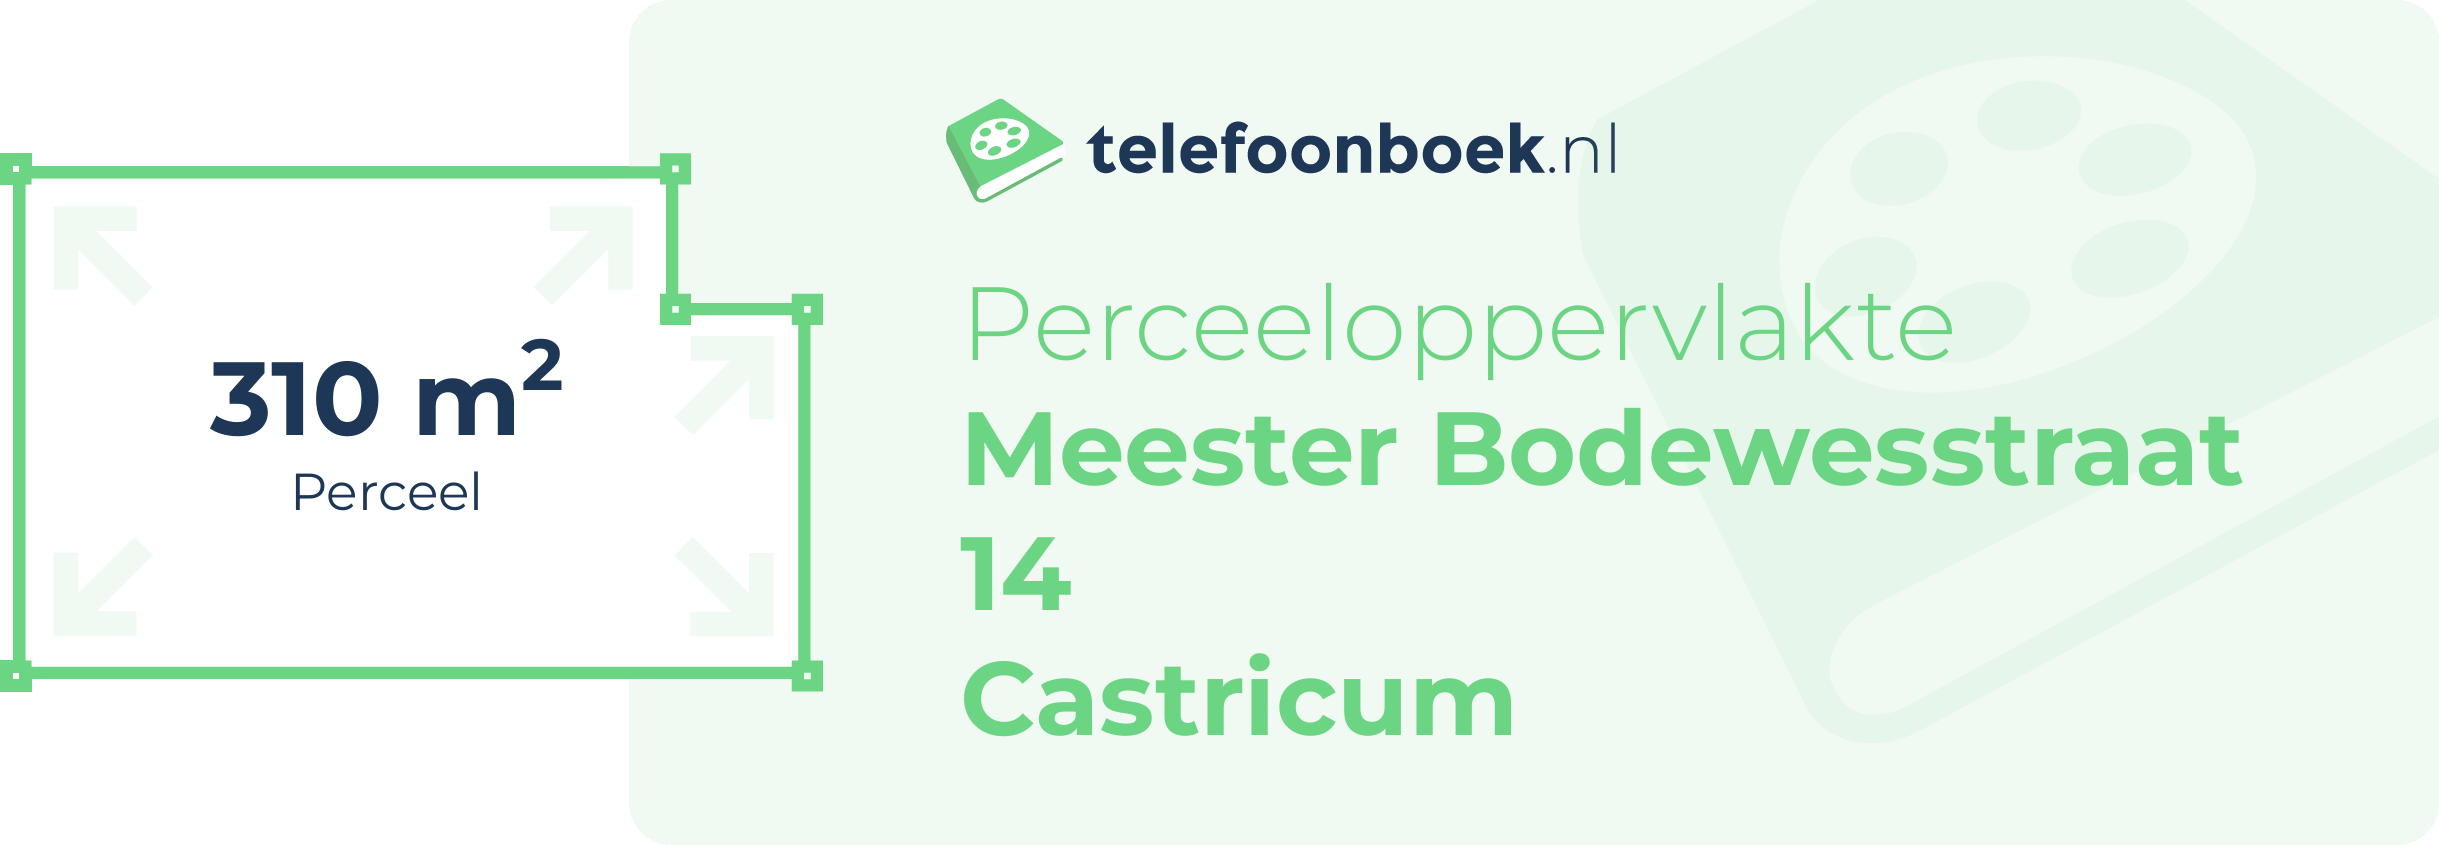 Perceeloppervlakte Meester Bodewesstraat 14 Castricum